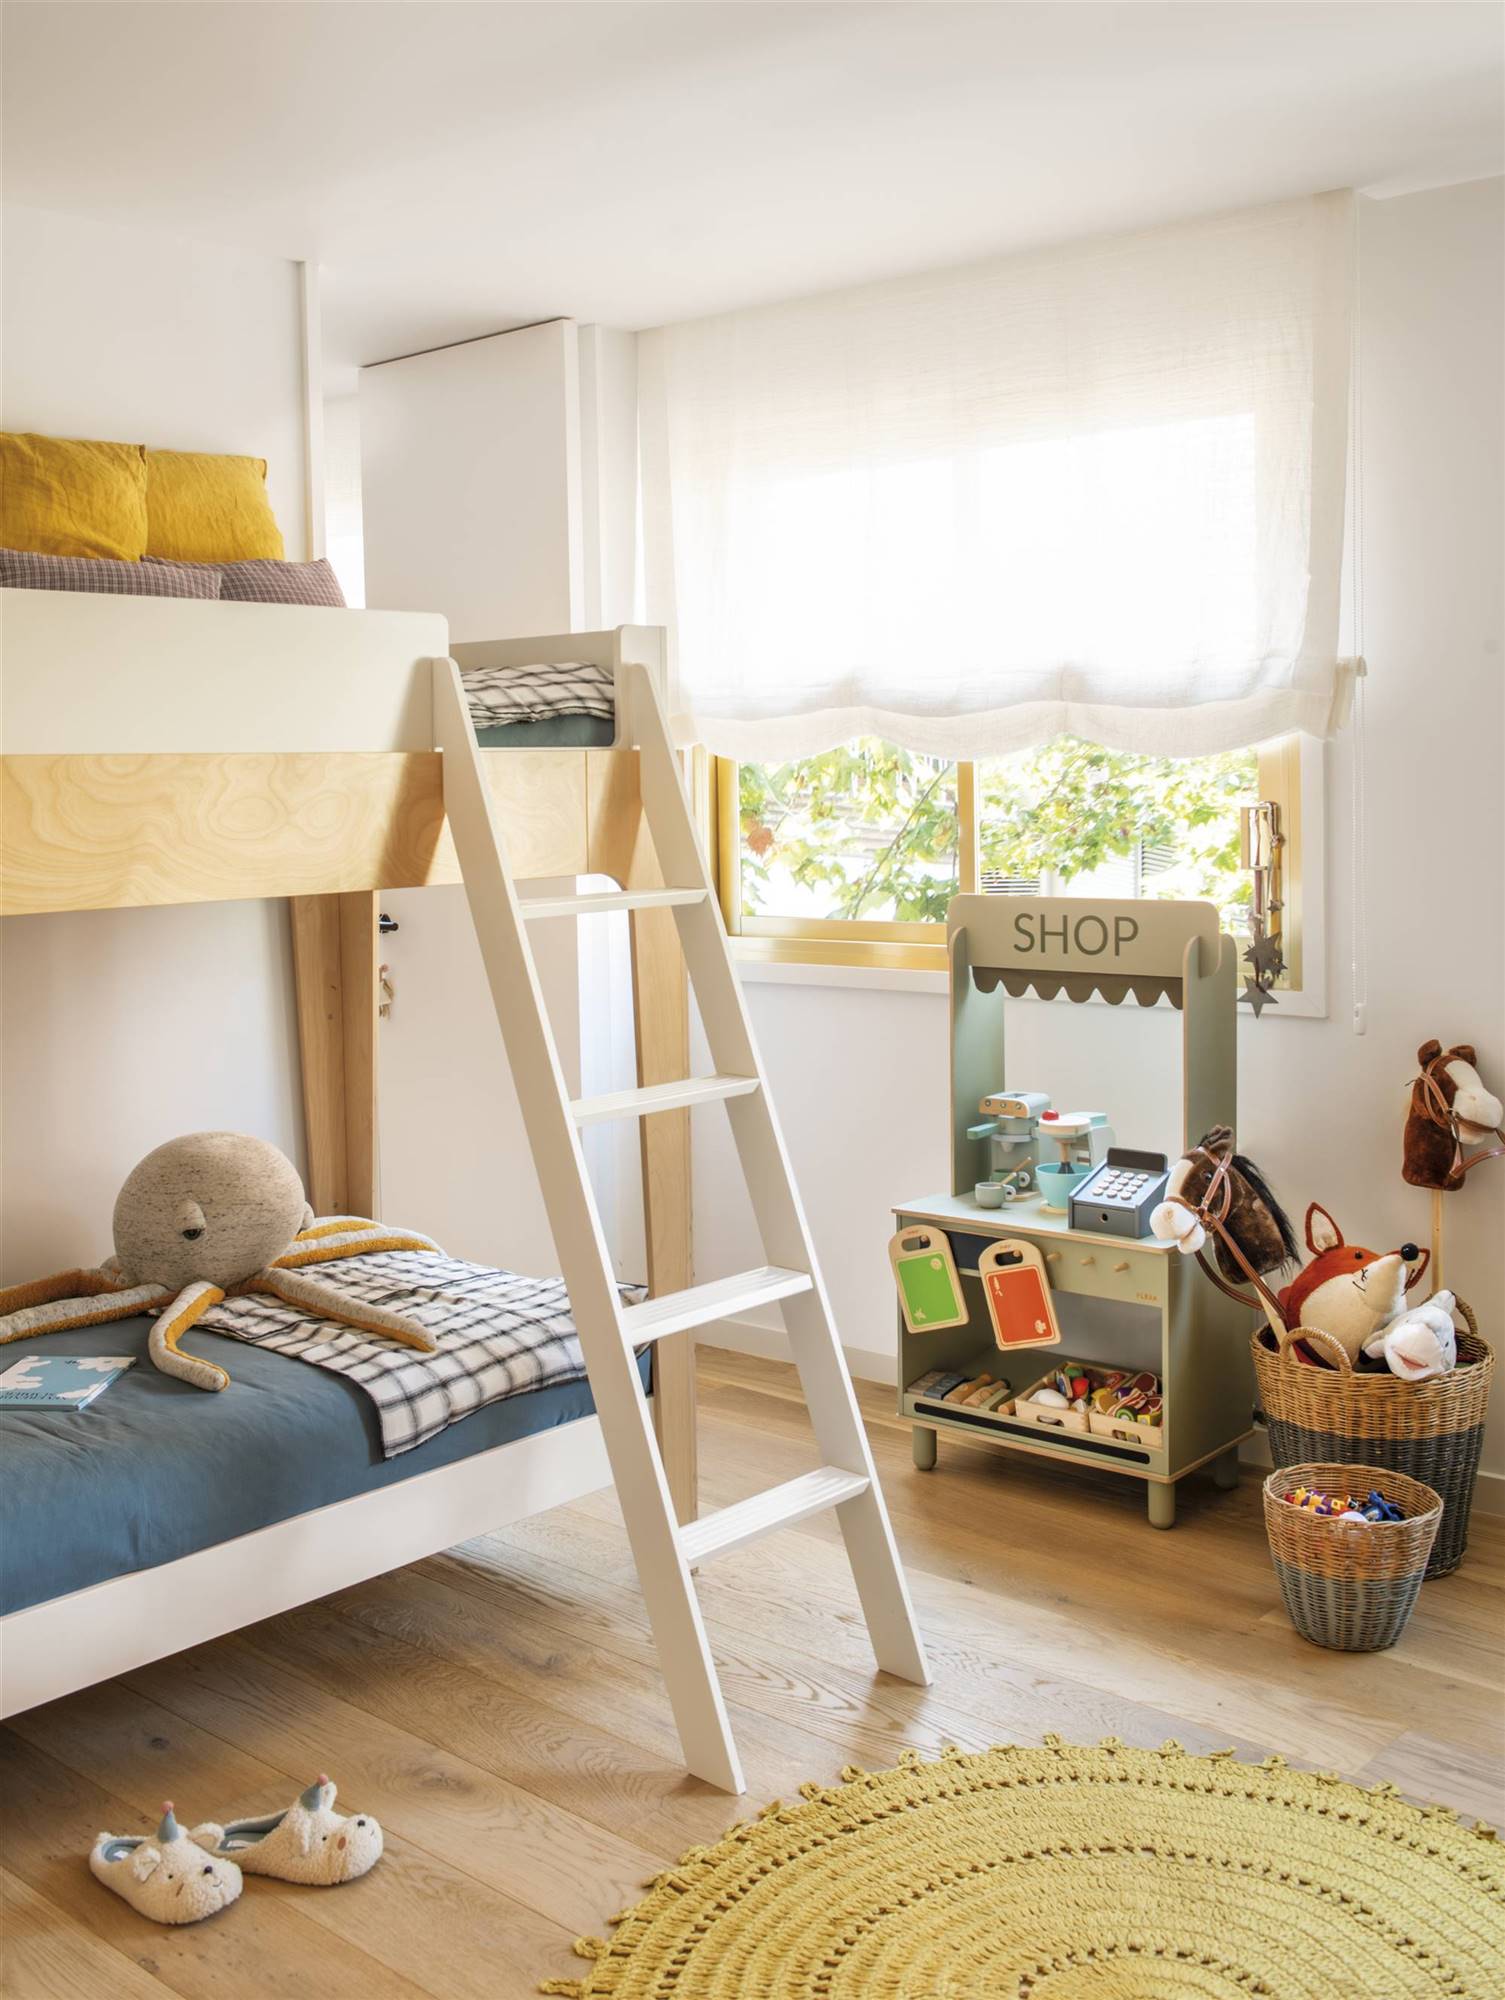 Dormitorio infantil con litera y cocina de juguete.